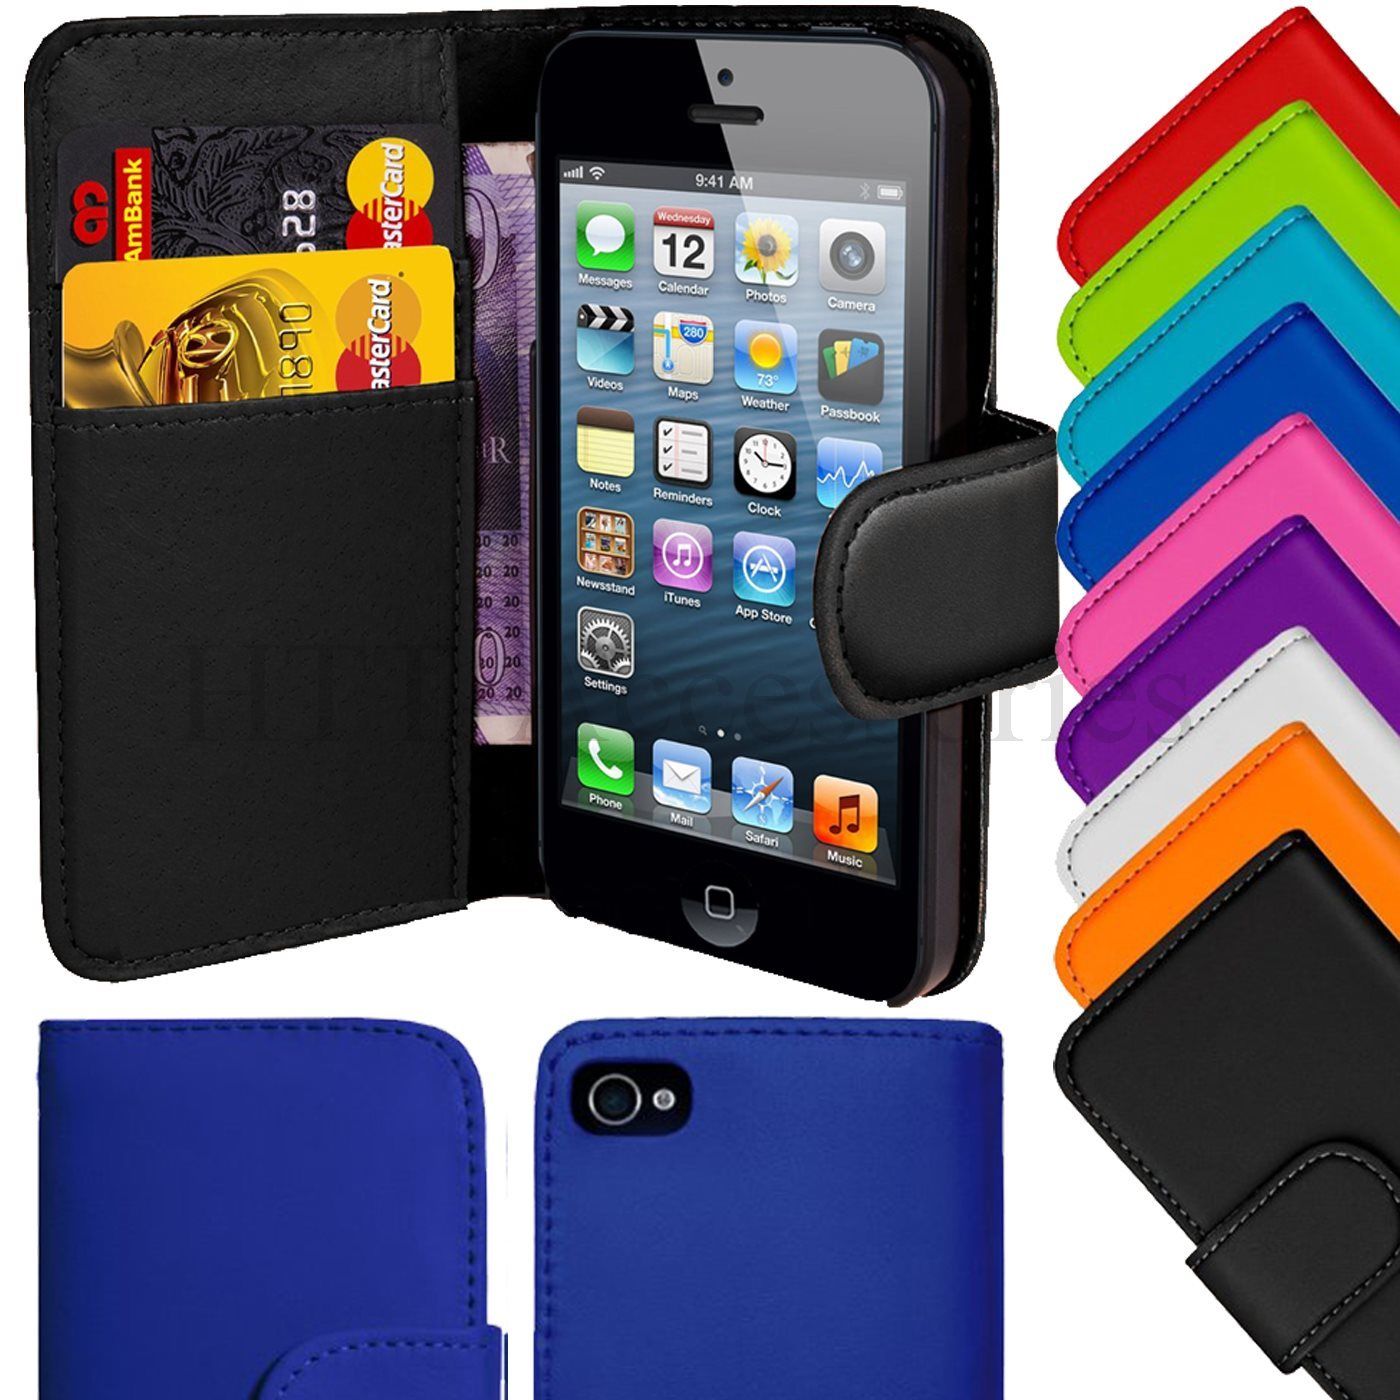 Flipcase wallet voor iPhone 4/4s of 5/5G-iphone-4s-5c-wallet-jpg